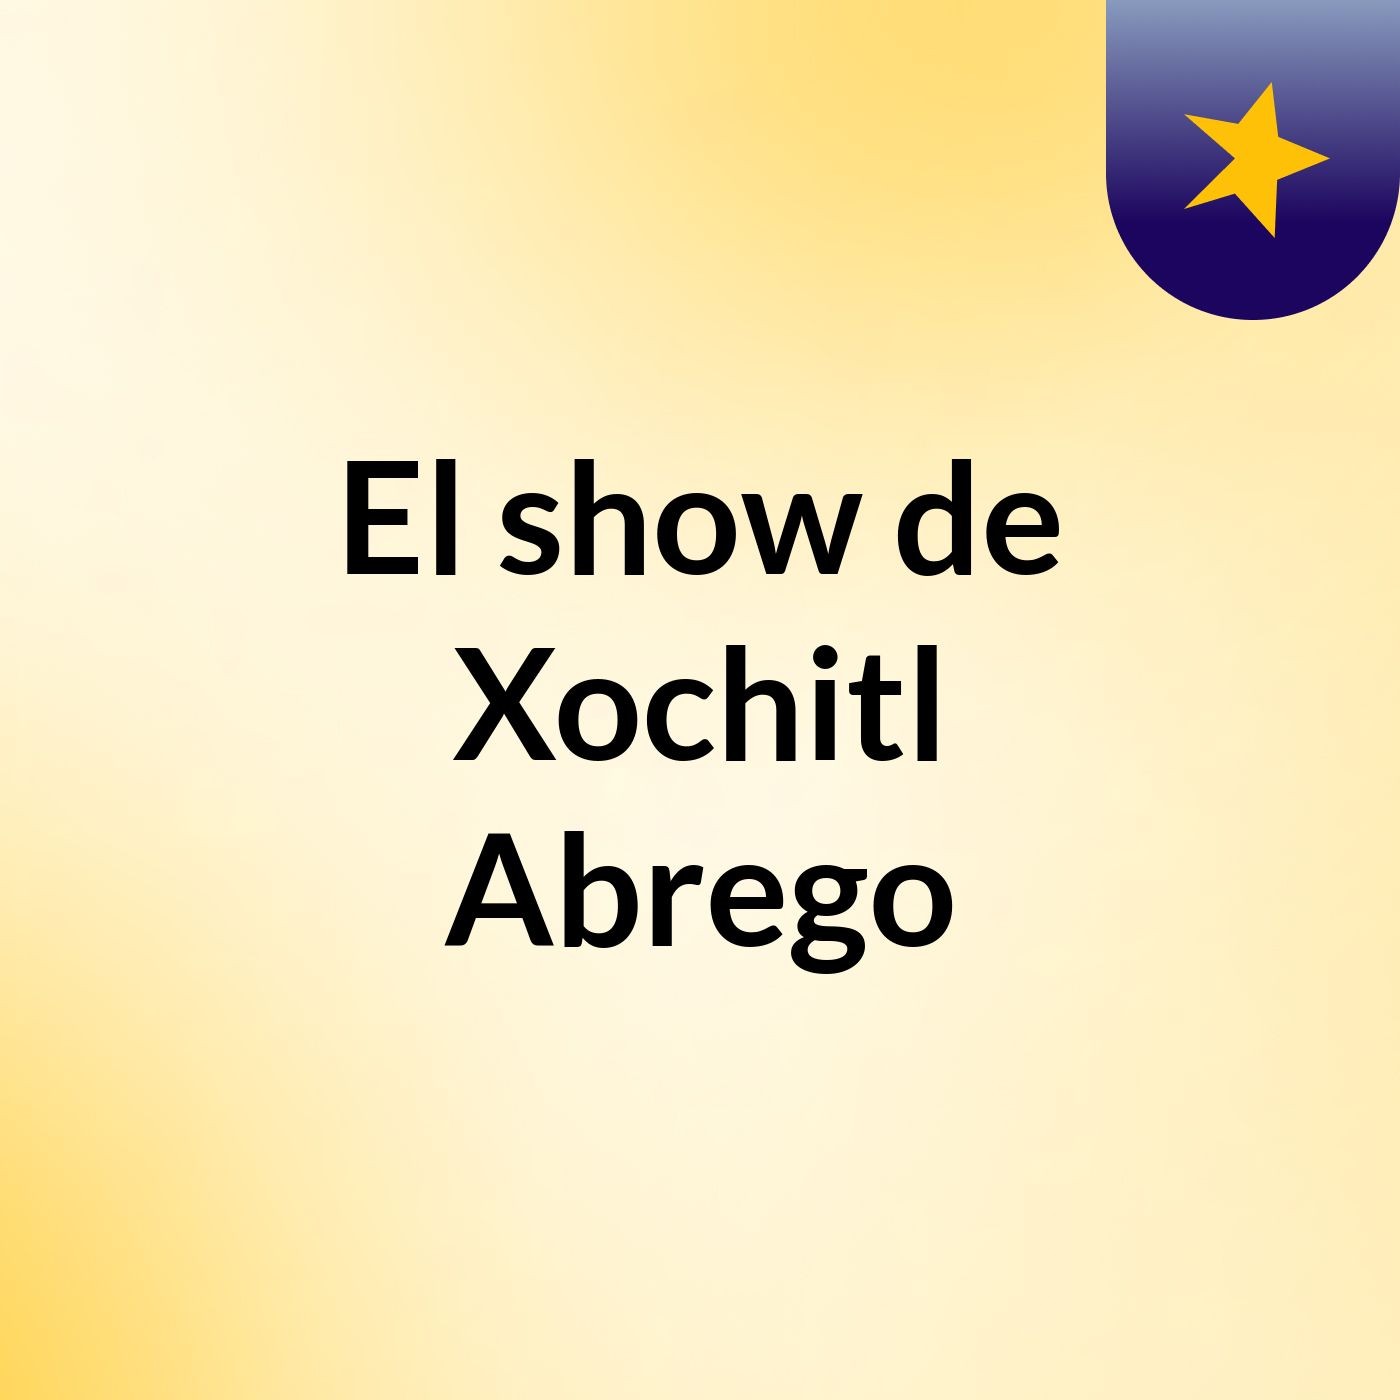 El show de Xochitl Abrego